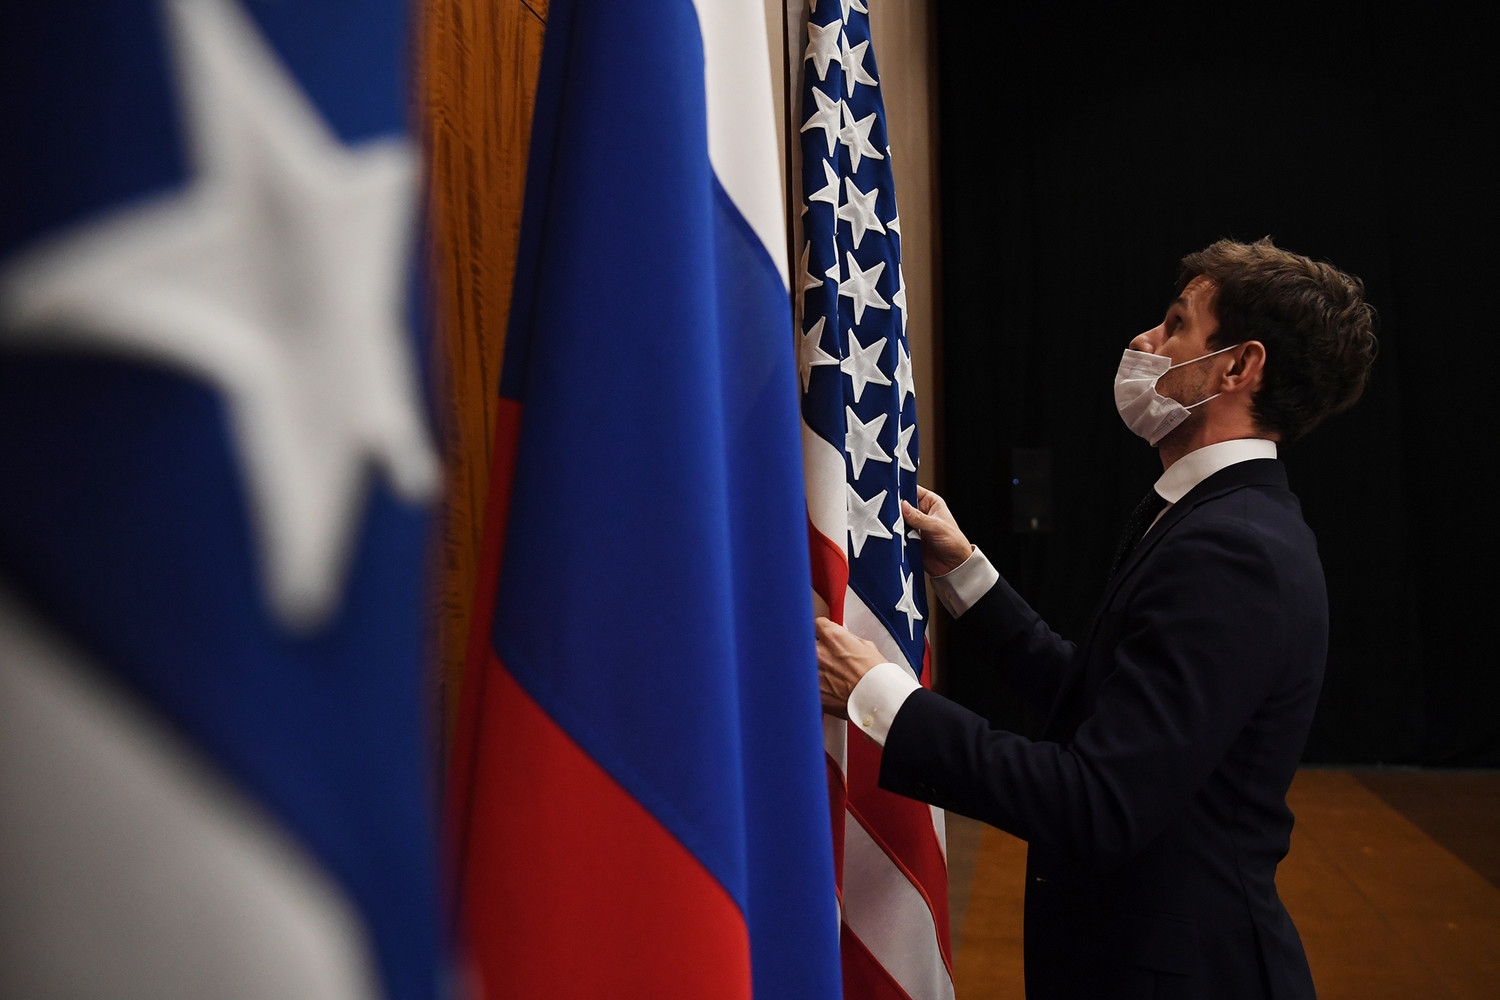 МИД РФ: отношения России и США находятся на последнем издыхании